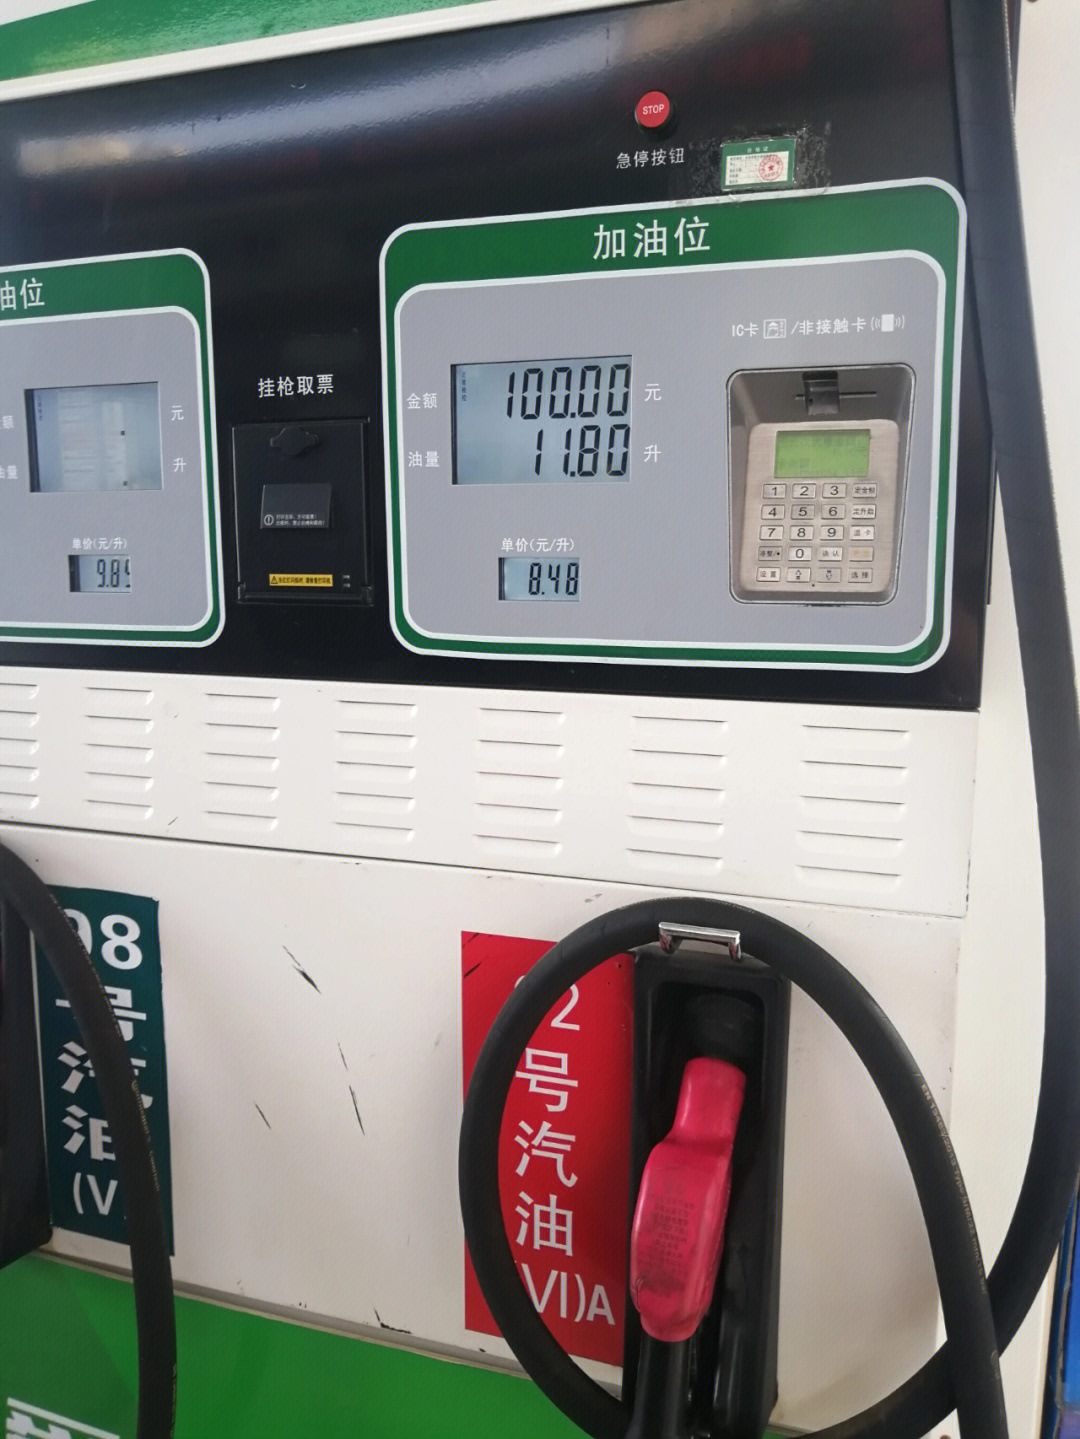 今天去中石化加油,92号汽油从926元/升降成了8